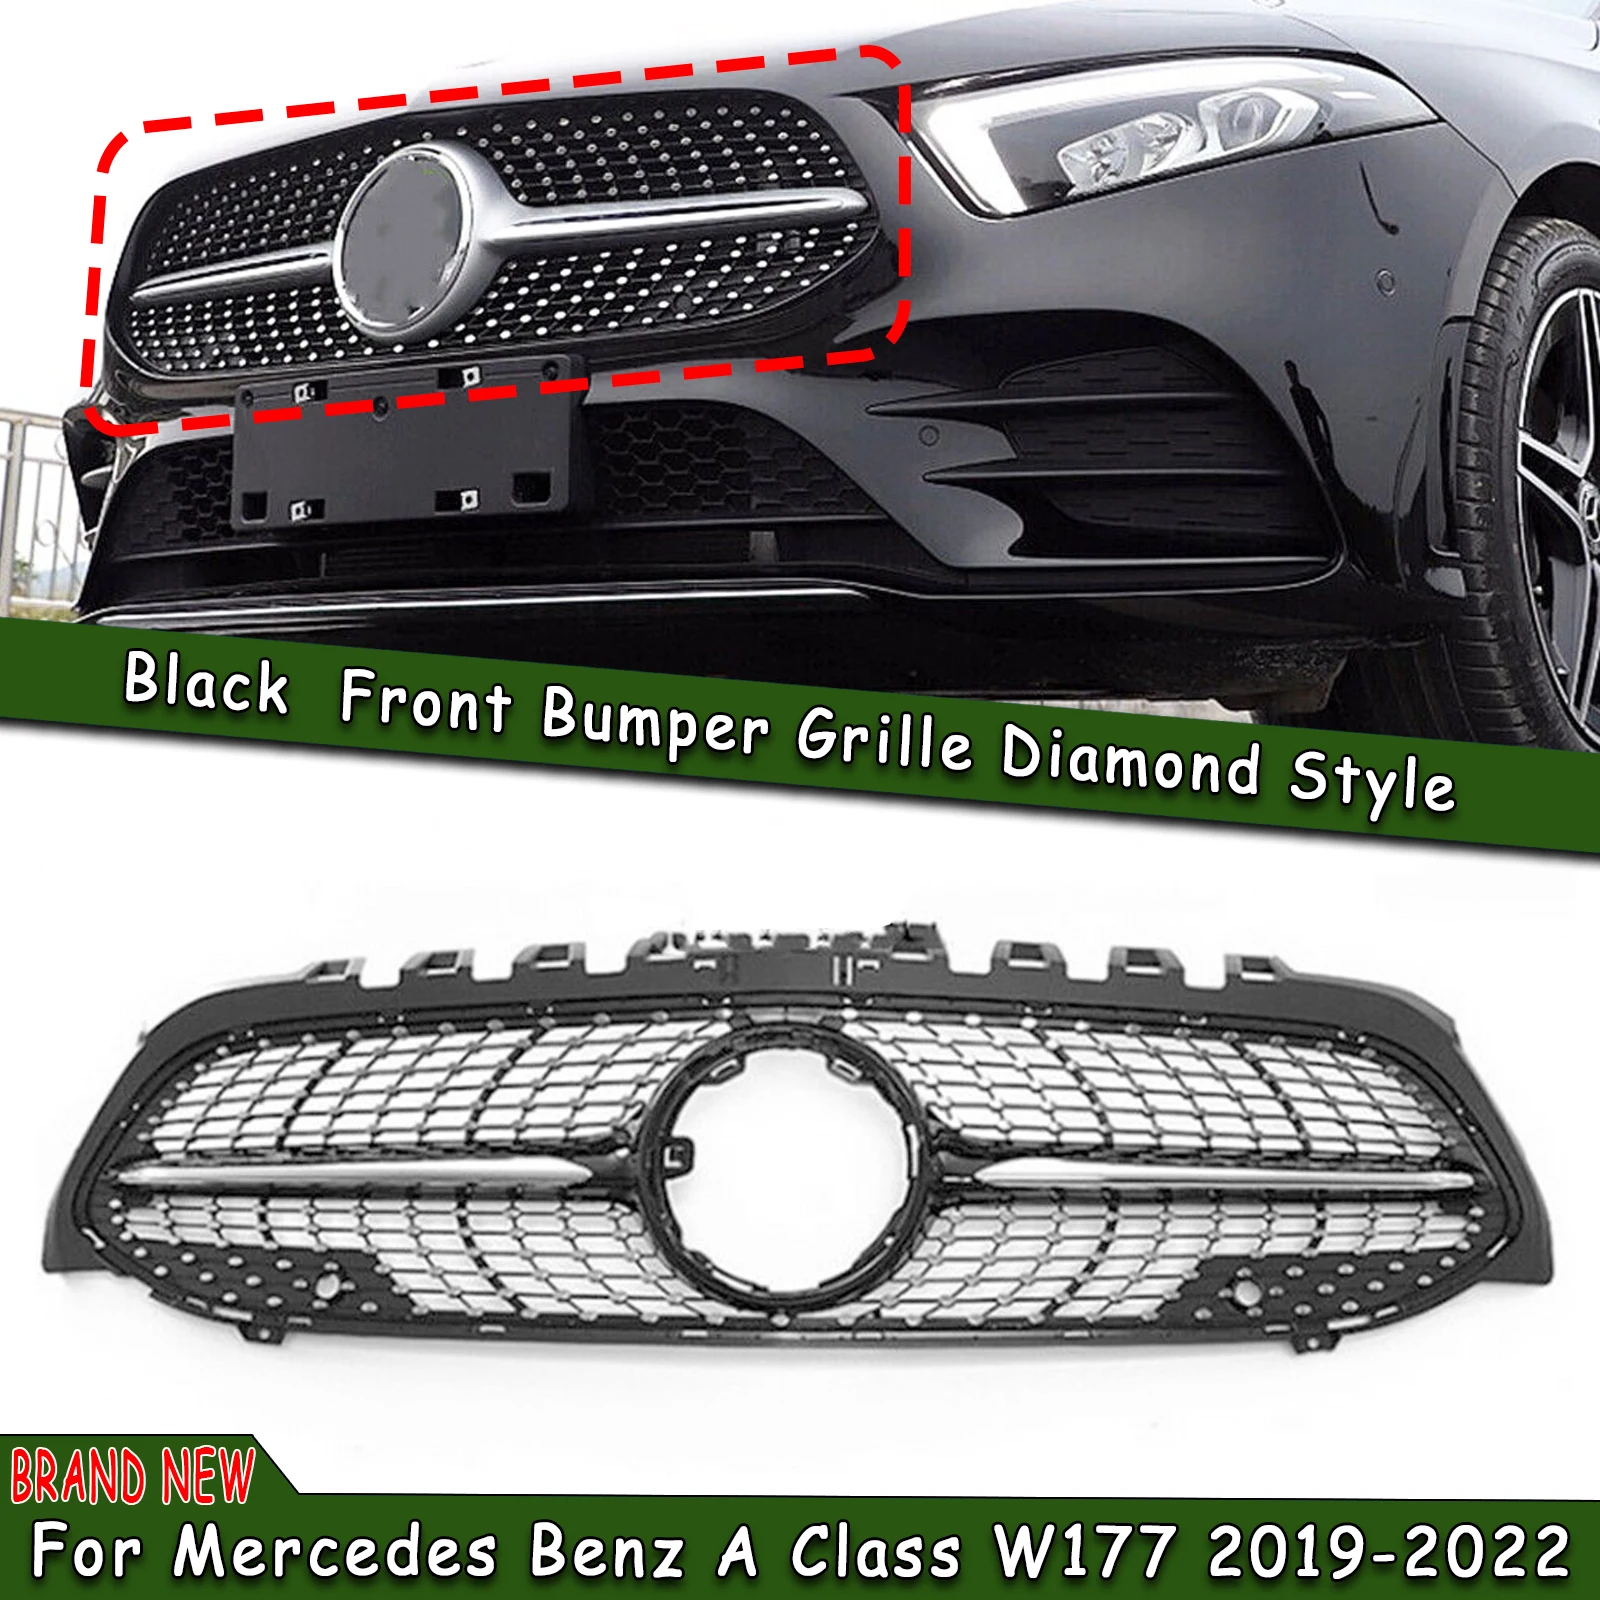 

Передняя решетка гриль Алмазный Стиль Автомобильный верхний бампер фоторешетка для Mercedes Benz A Class W177 A180 A200 A250 A45 AMG 2019-2022